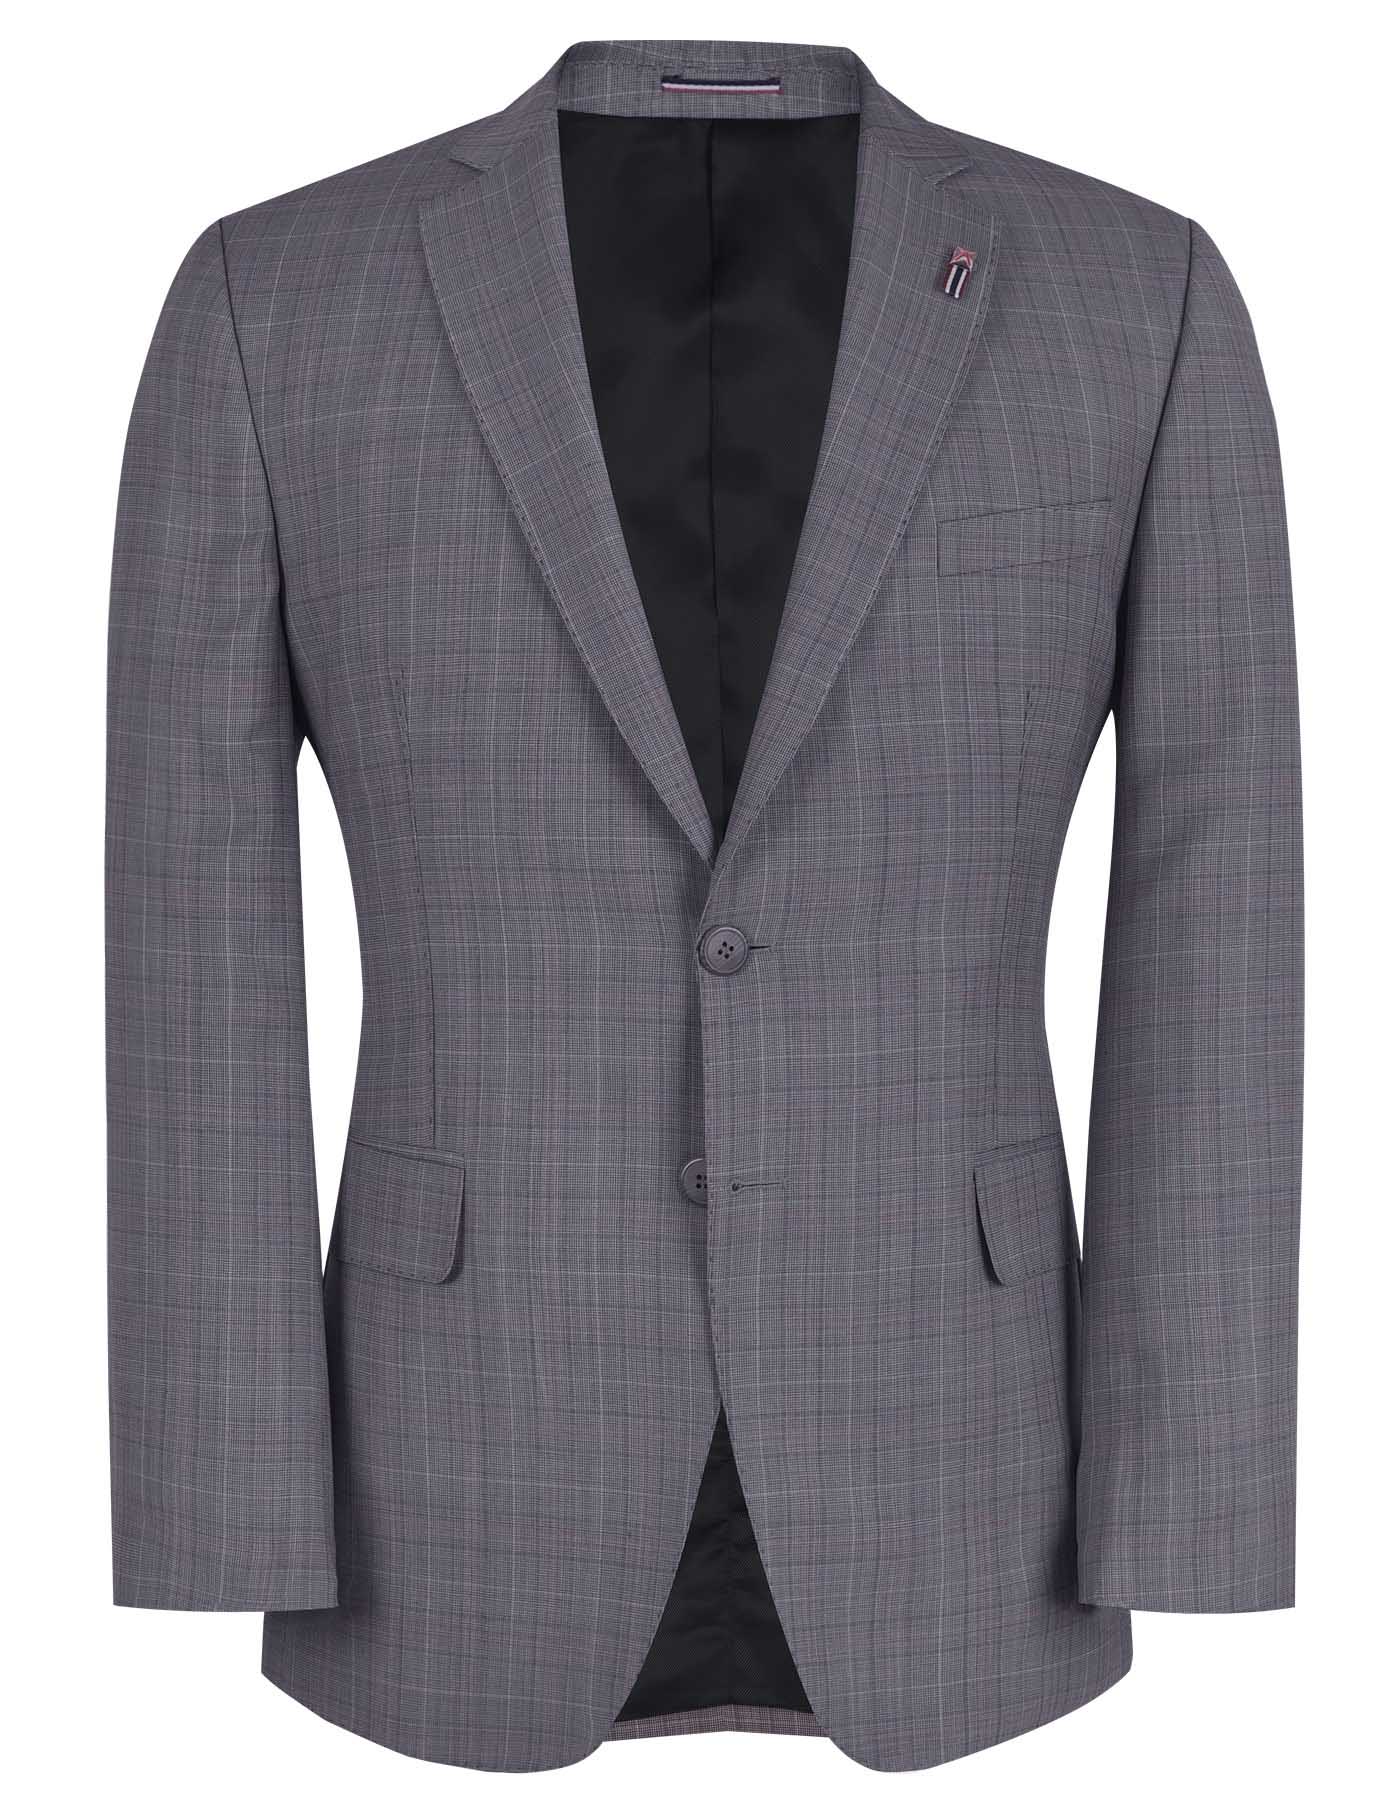 Ash Grey Classic Fit Coat